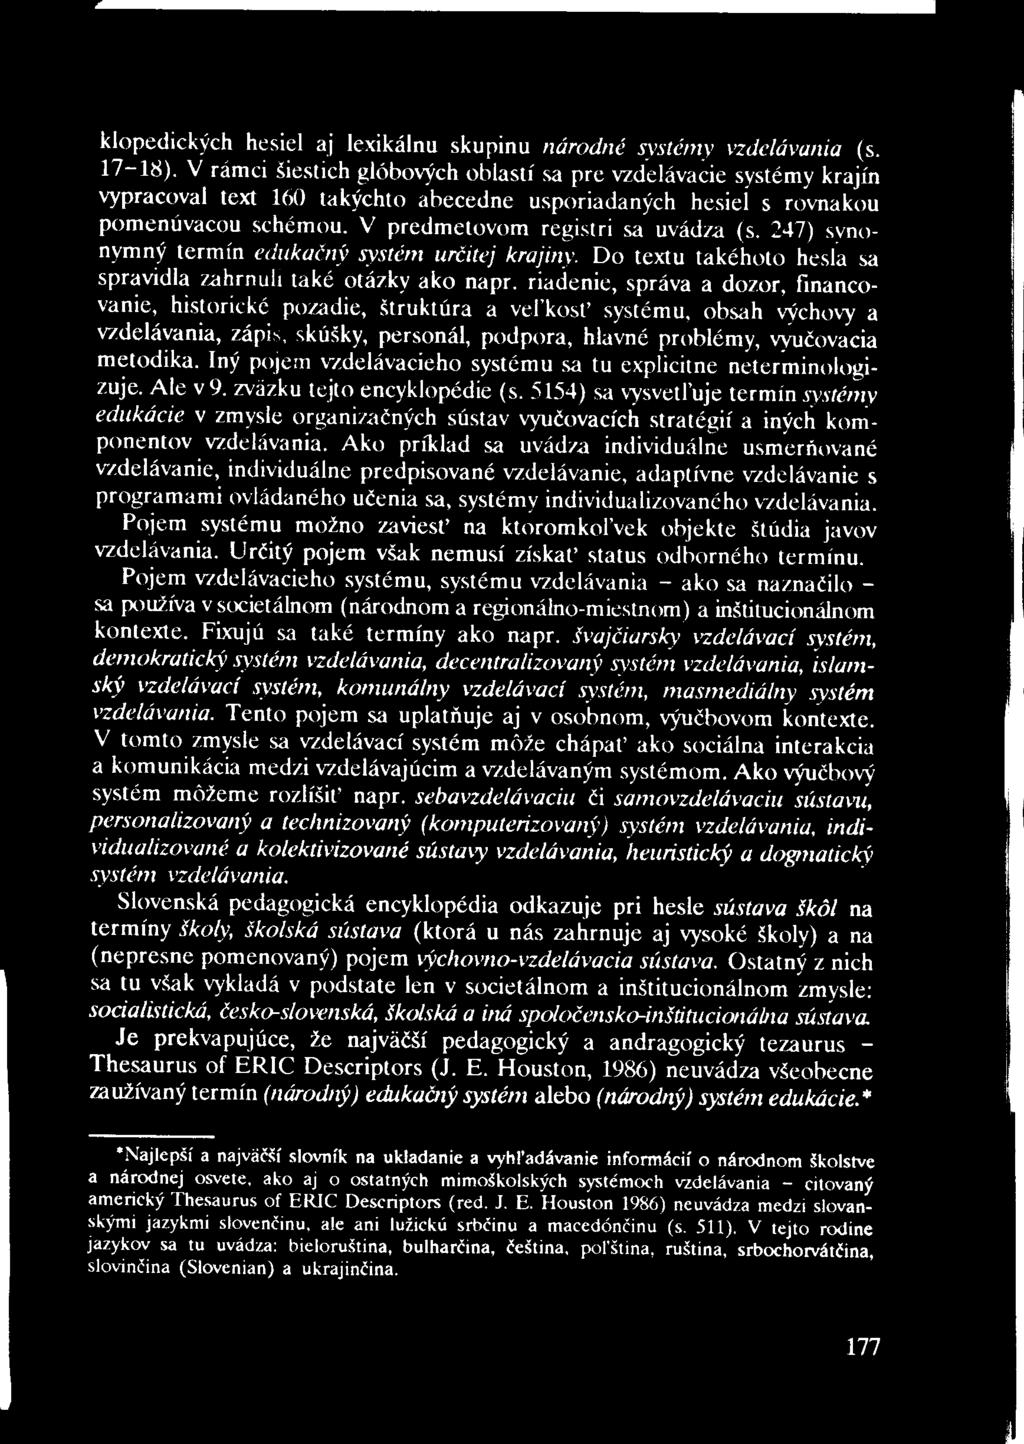 klopedických hesiel aj lexikálnu skupinu národné systémy vzdelávania (s. 17-18).